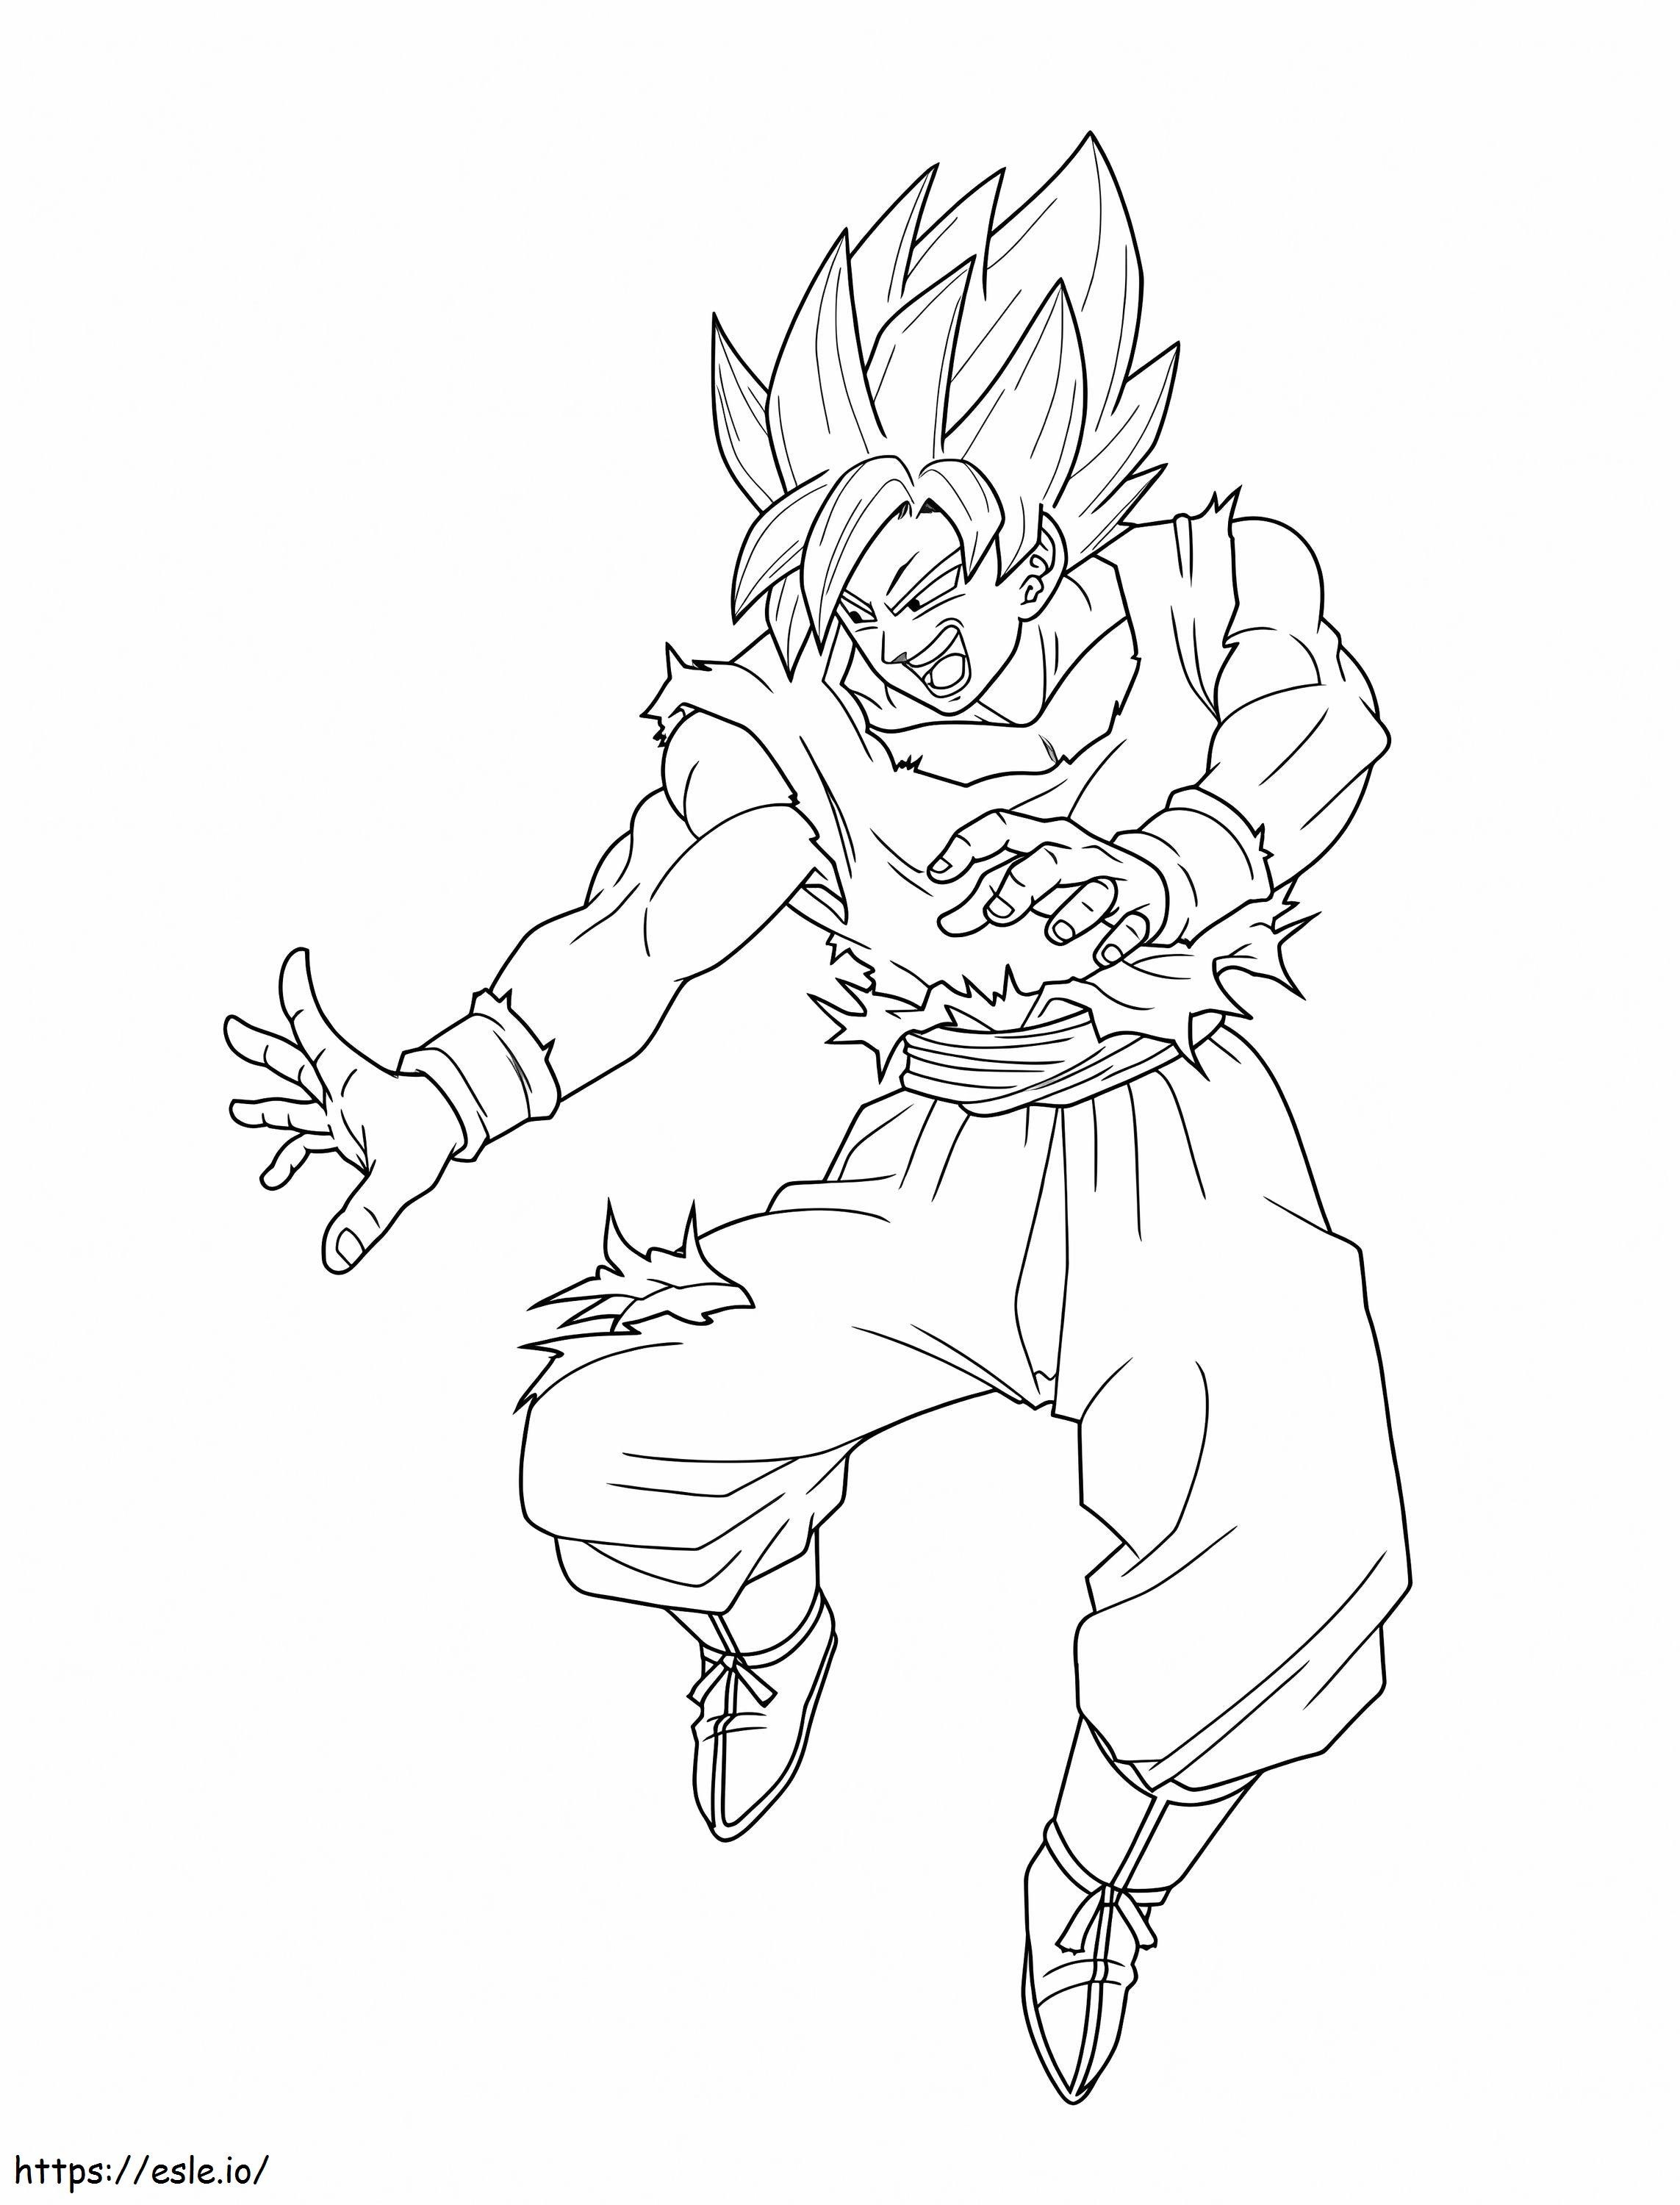 Desenho - Son Goku, o Super Saiyajin